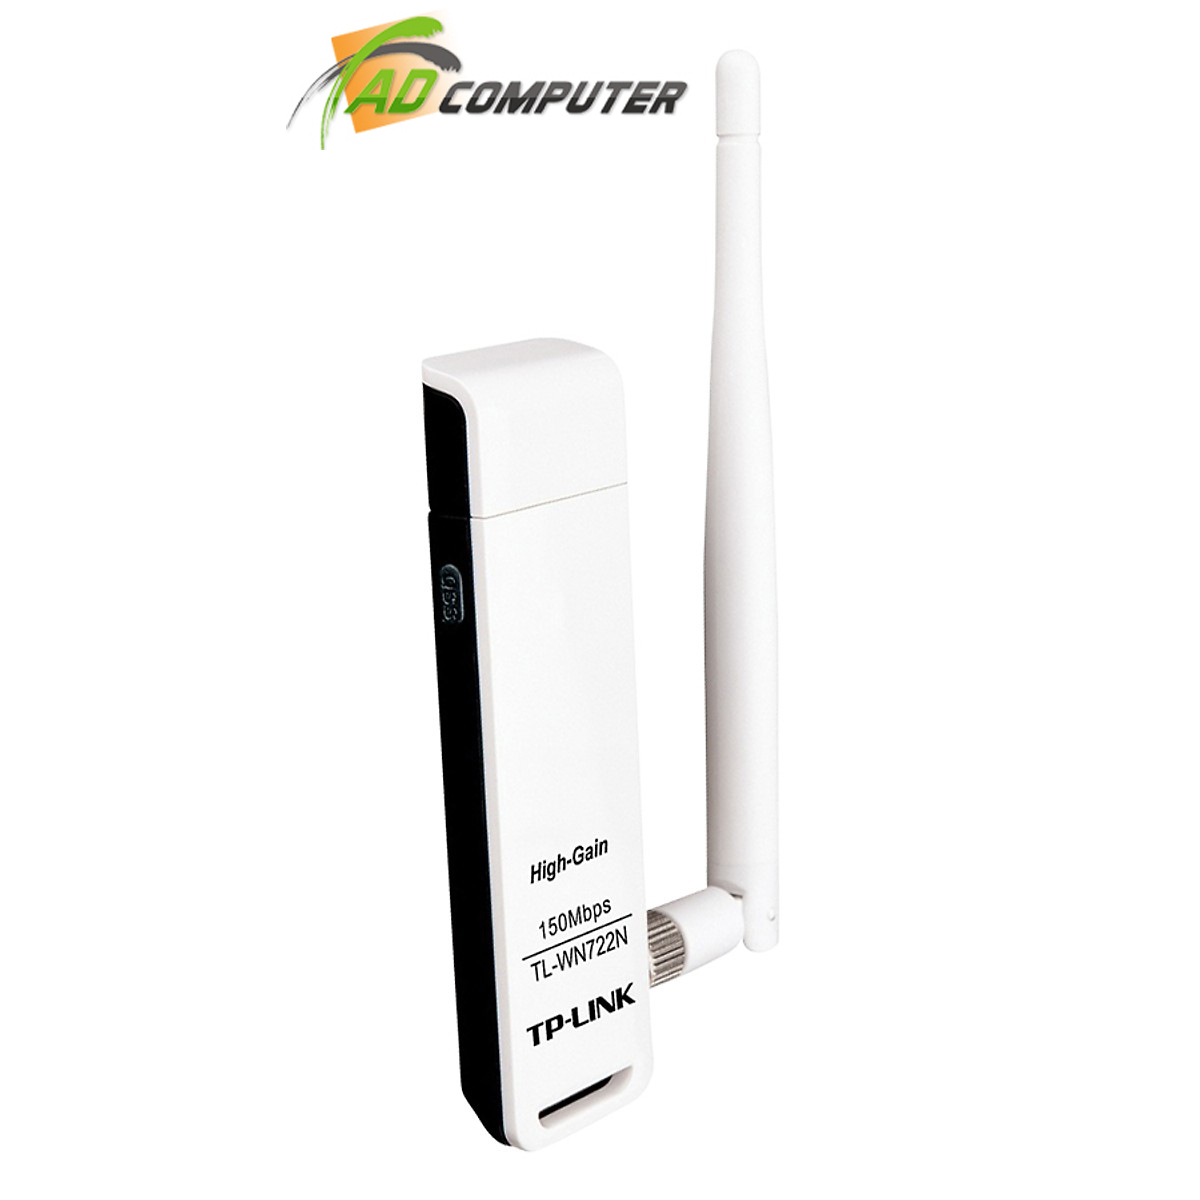 Bộ thu wifi TP-Link TL-WN722N - USB Wifi (high gain) tốc độ 150Mbps